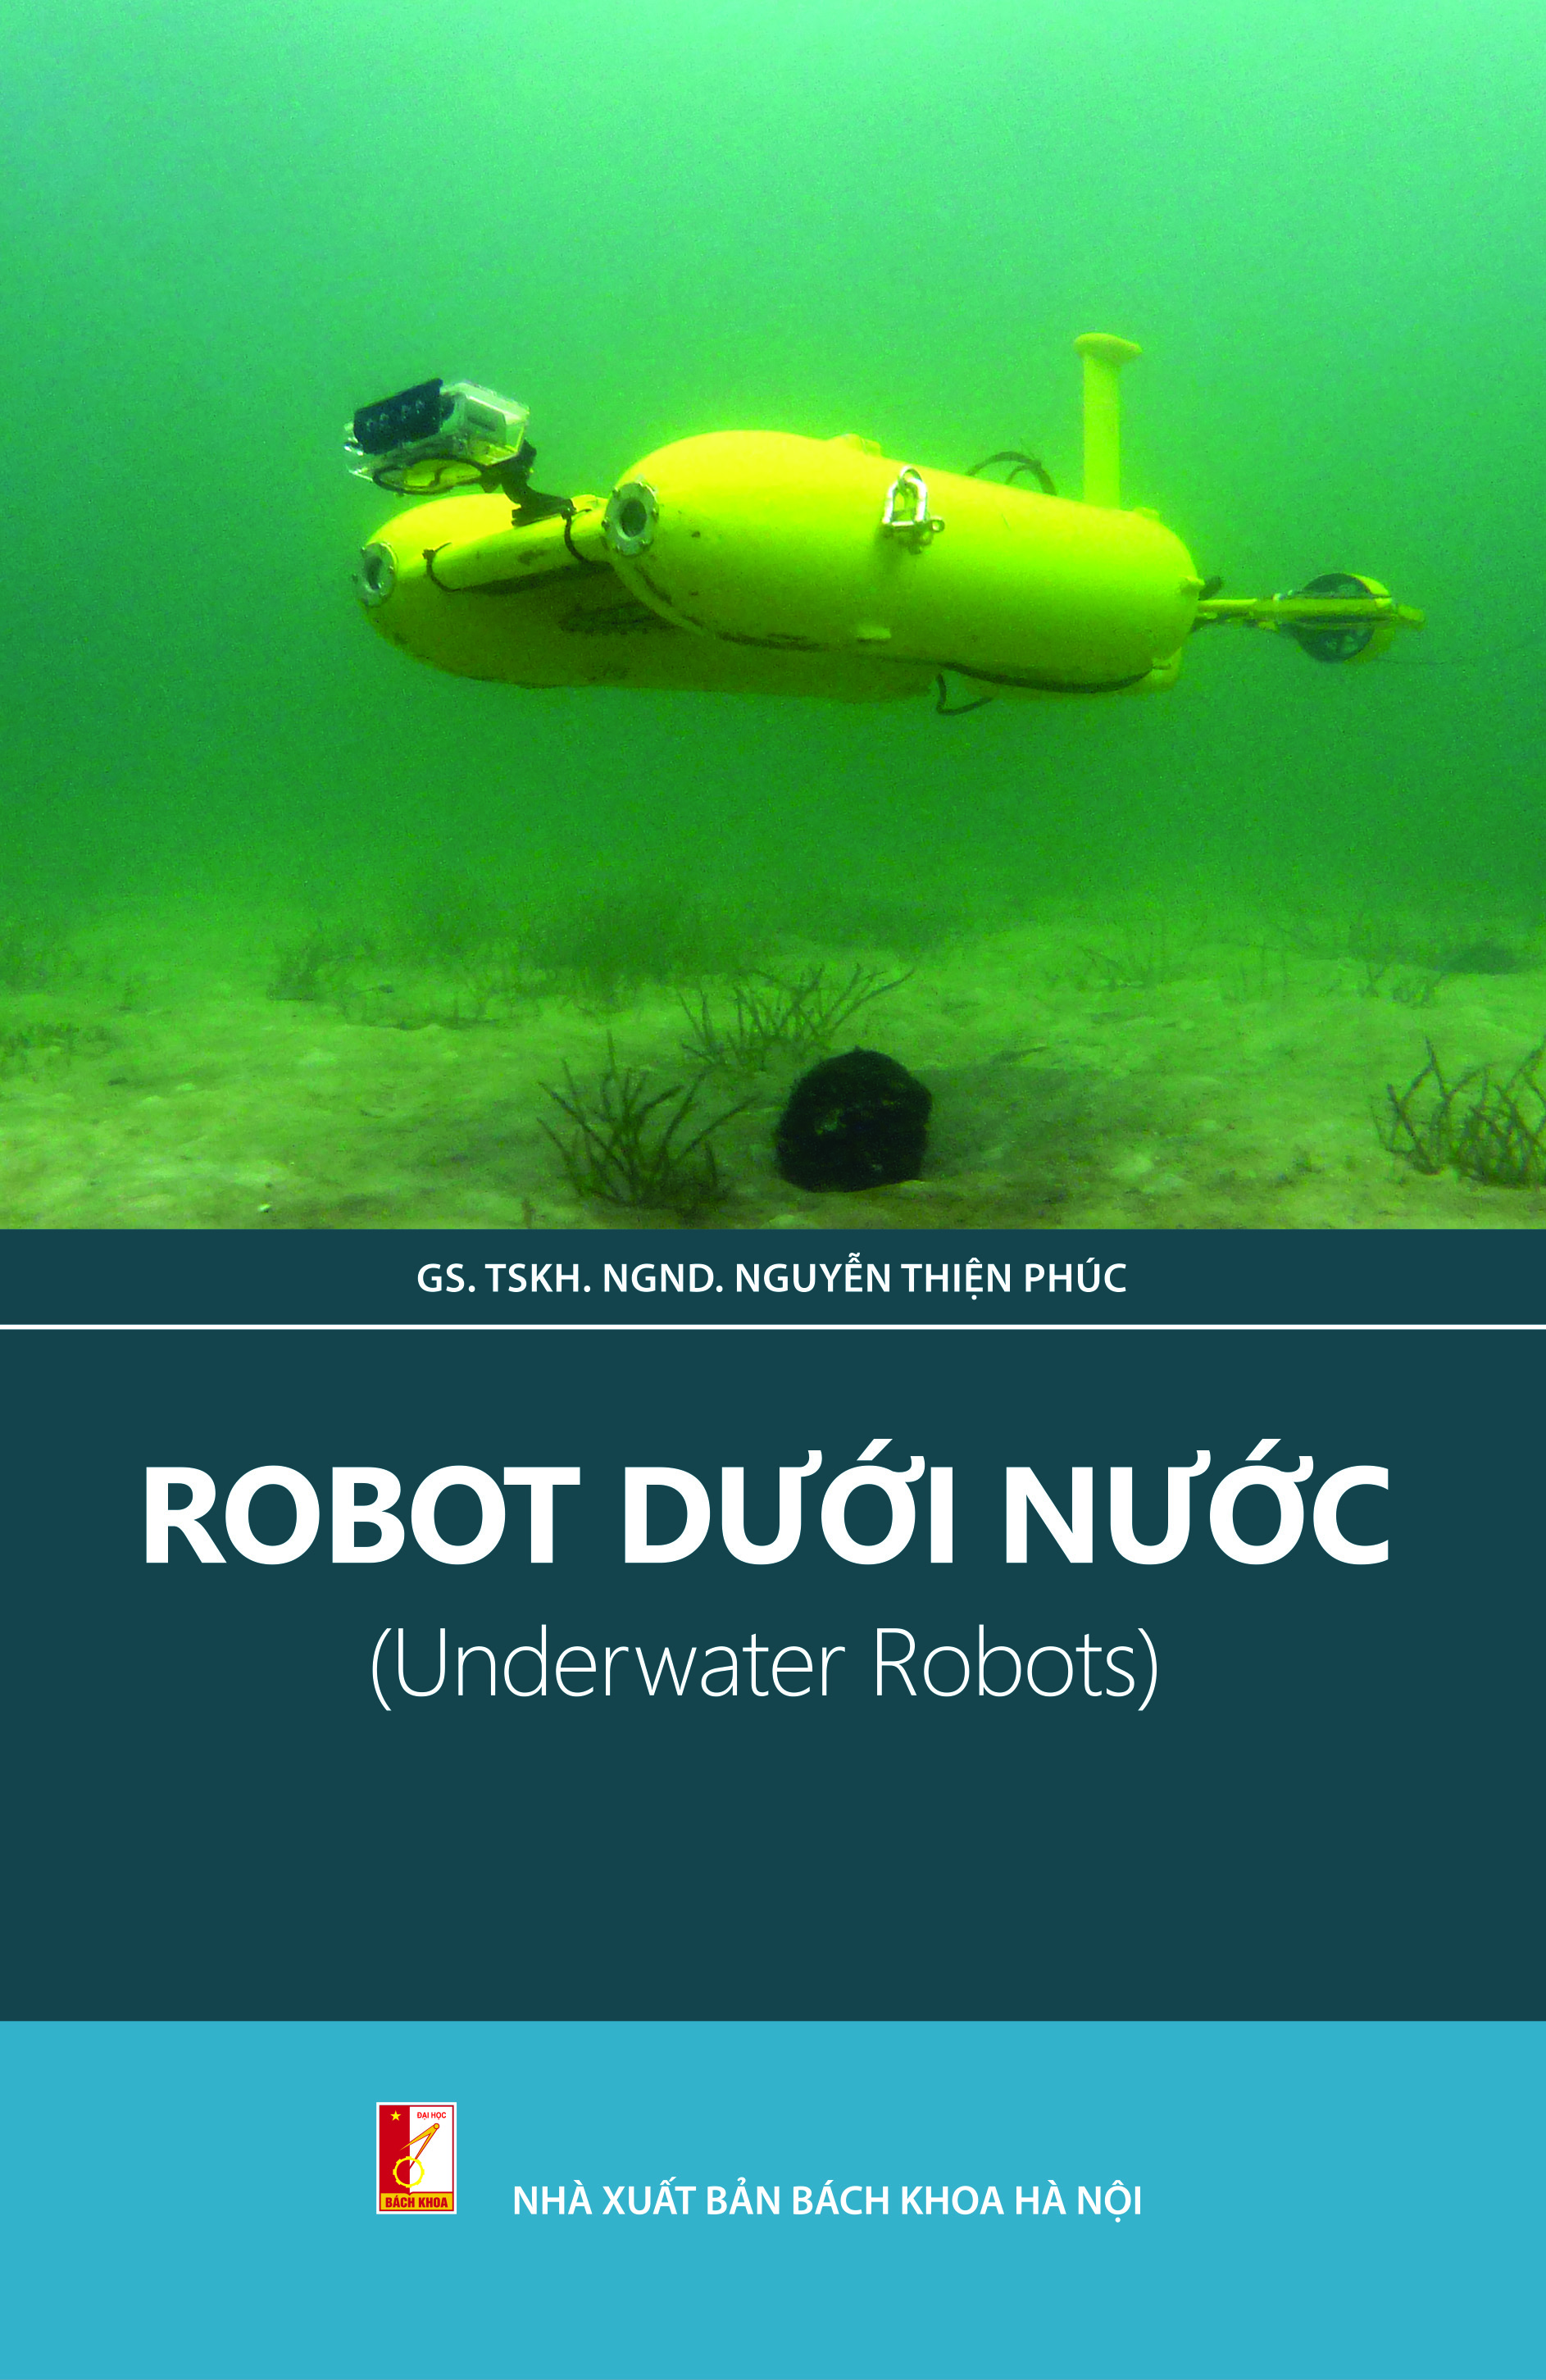 Robot dưới nước
